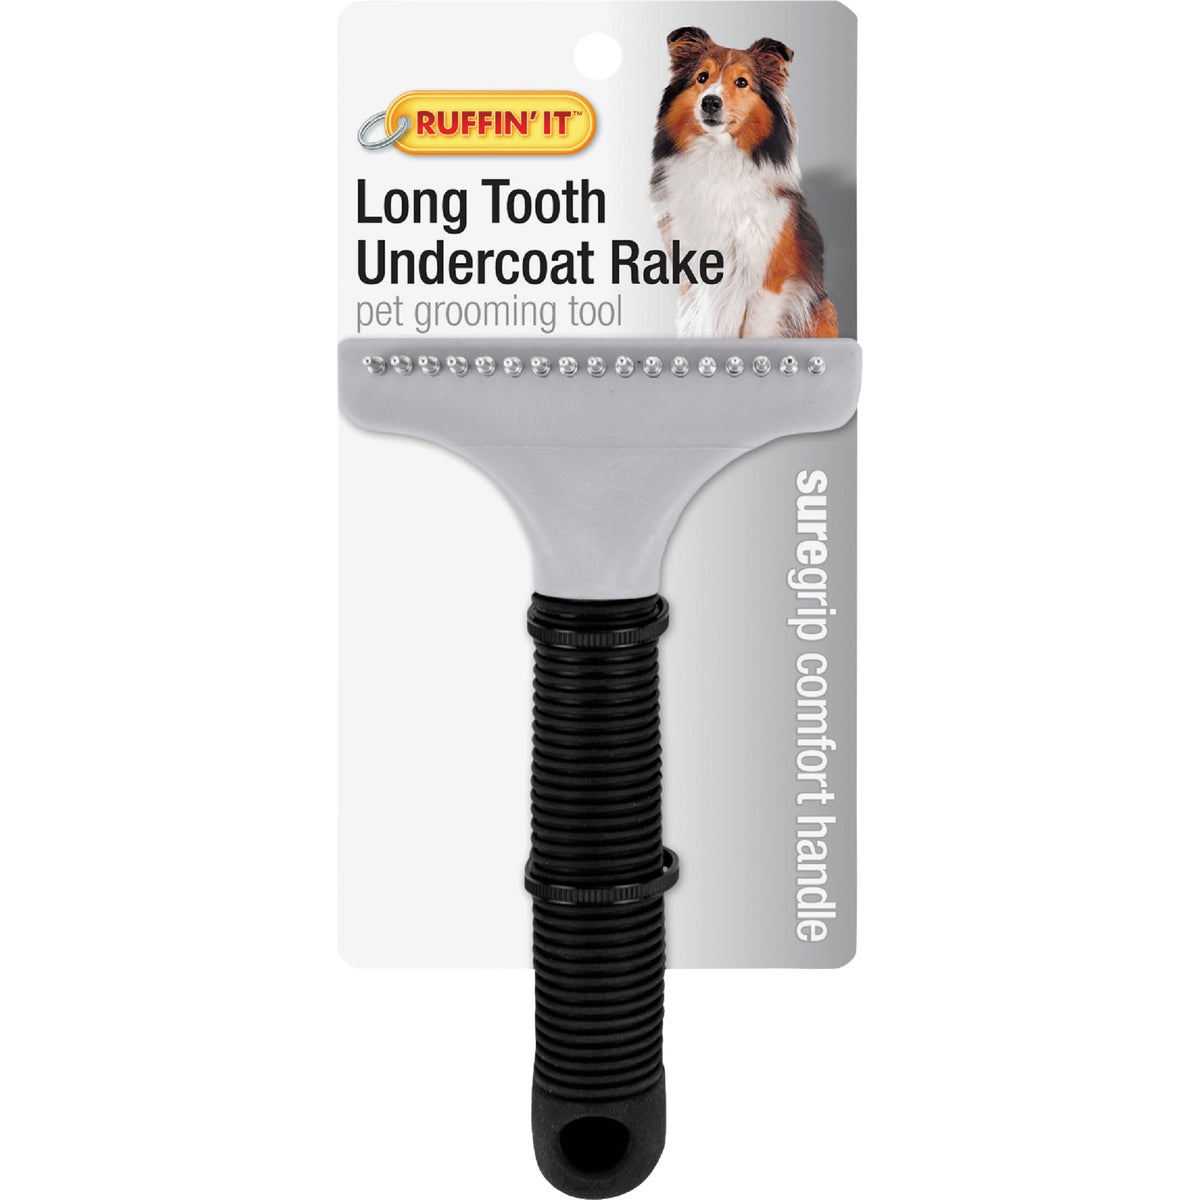 Item 810661, Long tooth undercoat rake pet grooming tool. 17-tooth head.